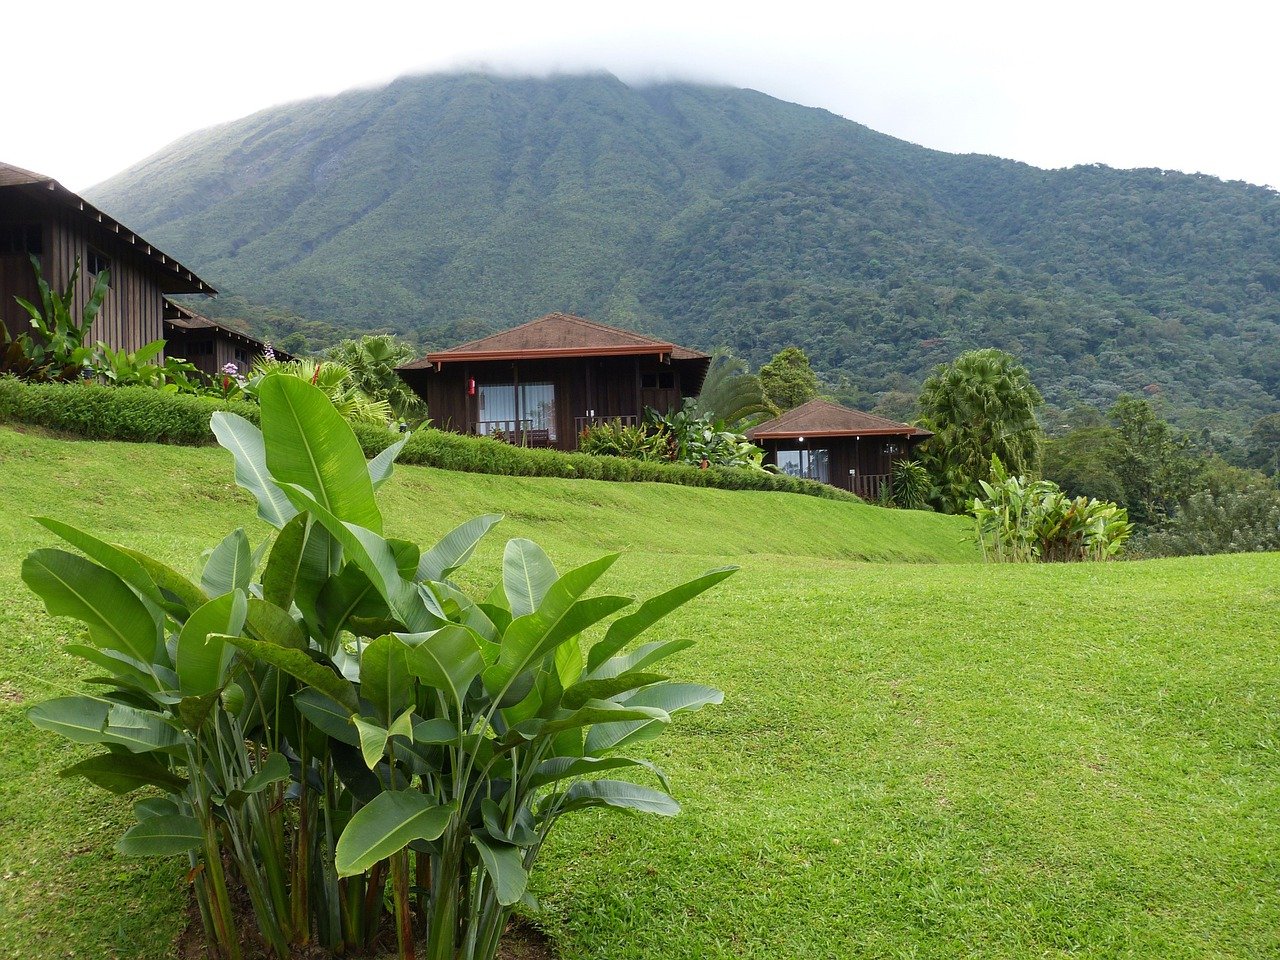 ¿Cuál es la mejor época para viajar a Costa Rica?